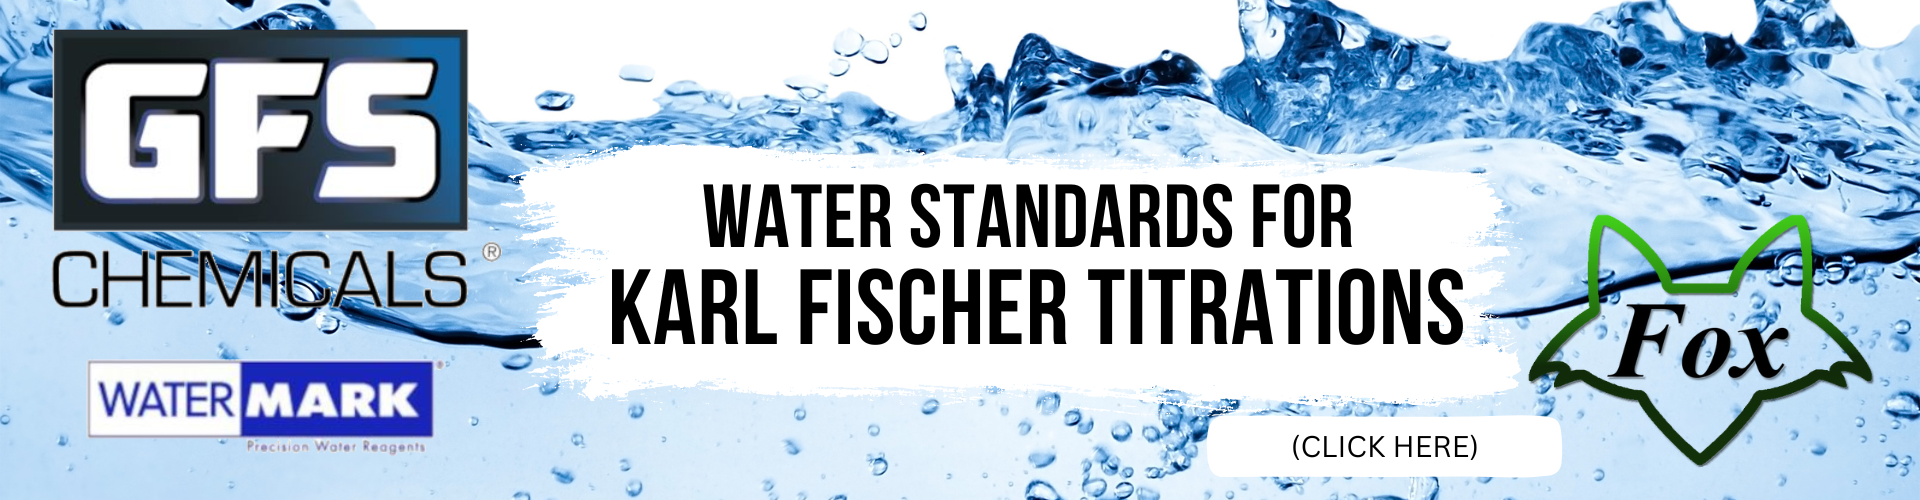 Karl Fischer Titration Standards